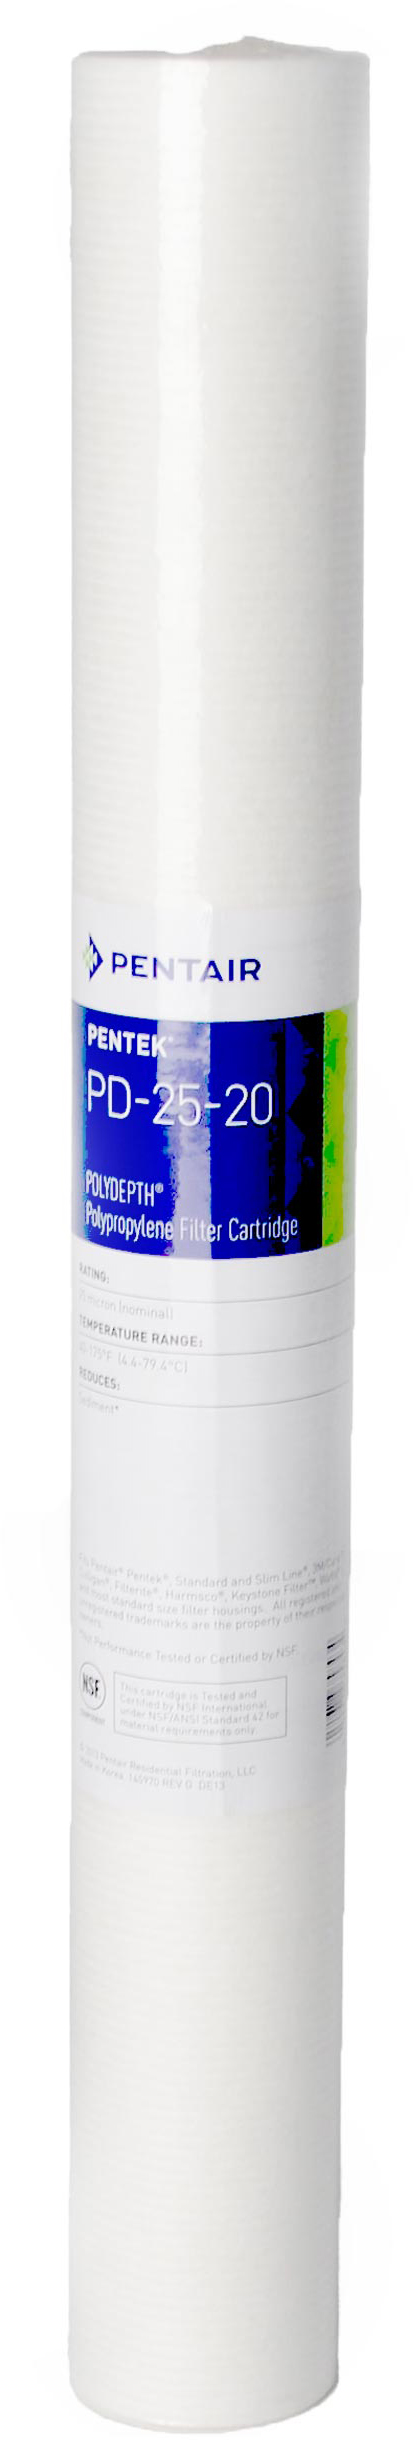 Картридж Pentek для холодной воды Pentek PD-5-20 Polydepth (155756-43) в Киеве